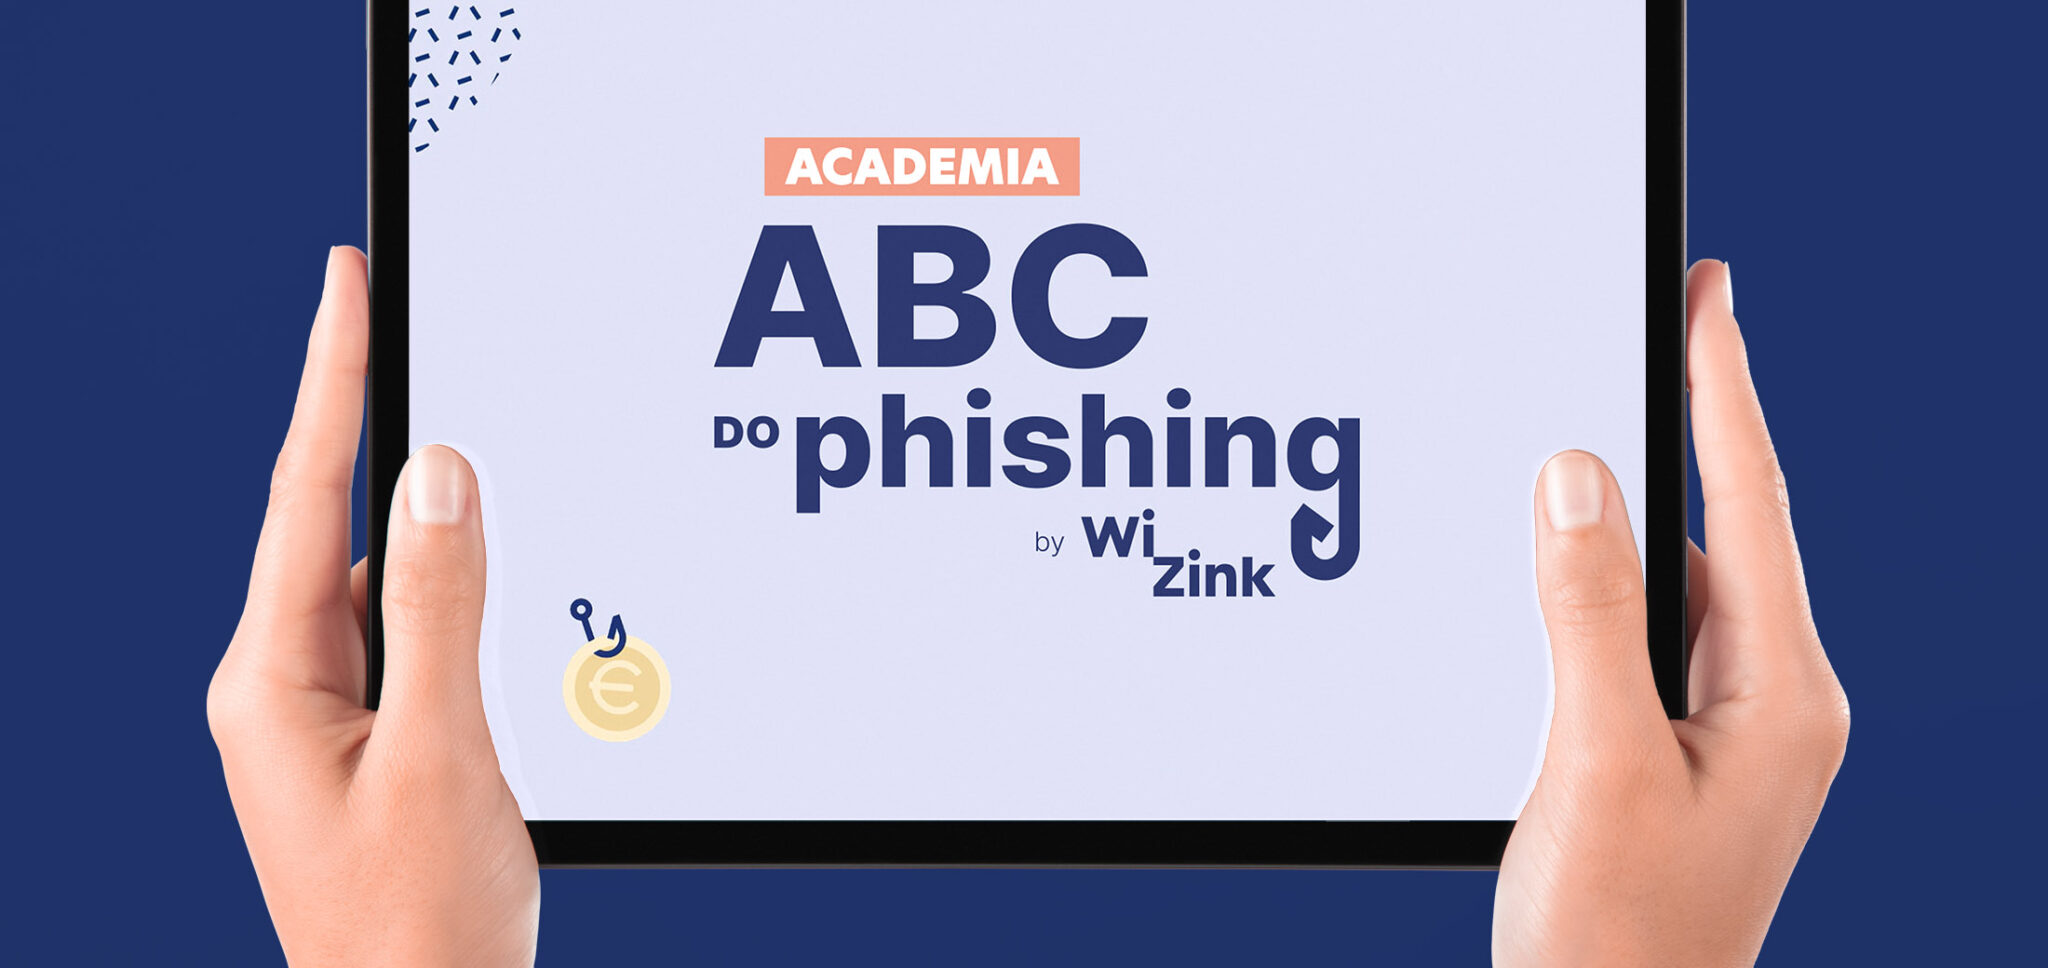 Abc do Phishing by Wizink